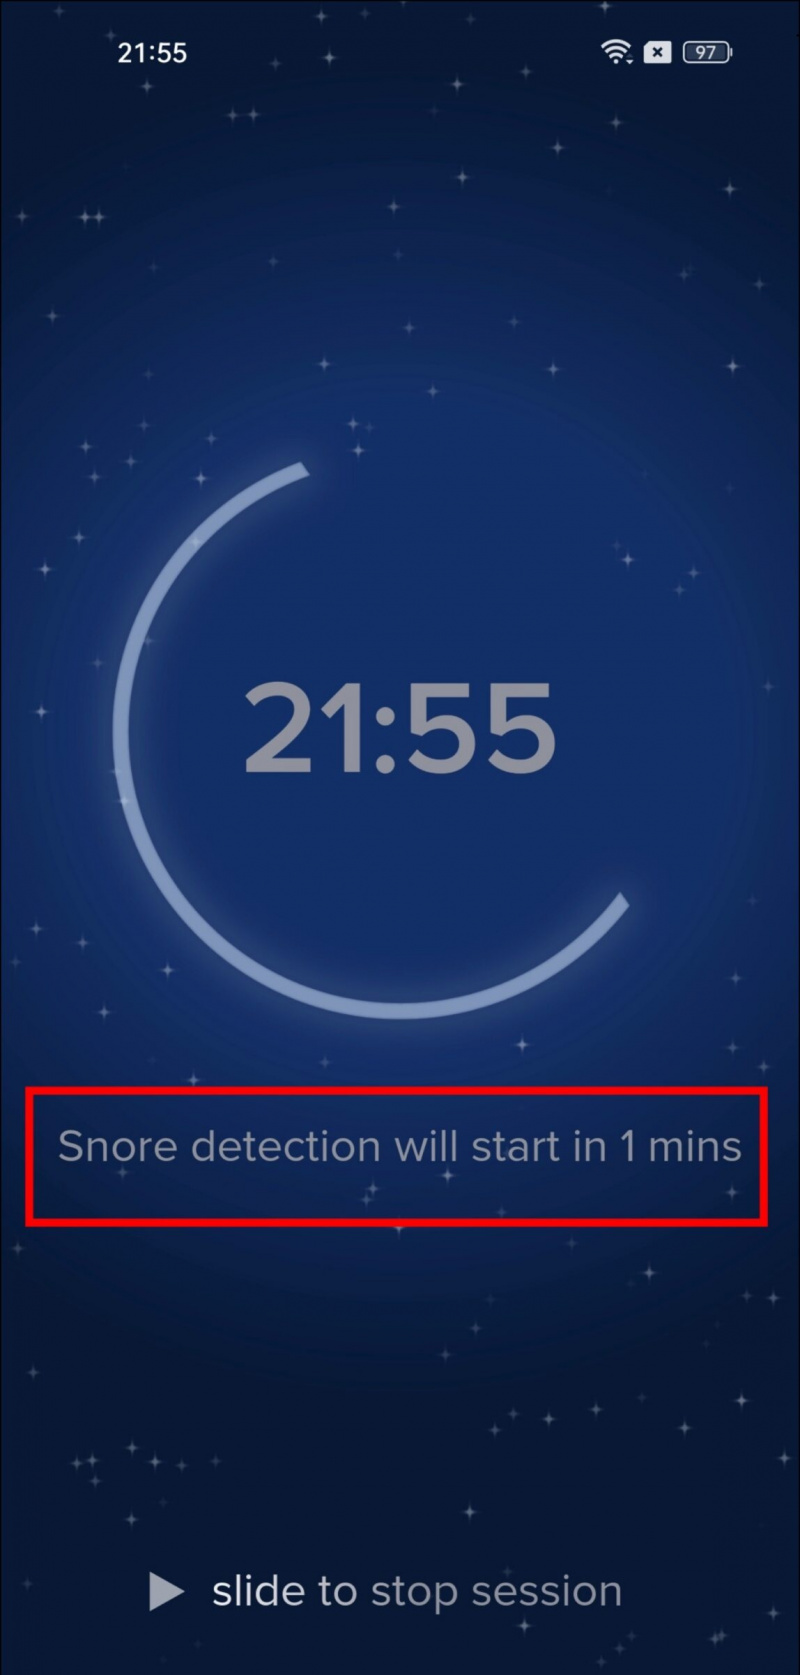   Kumuha ng Cough snore detection sa Android